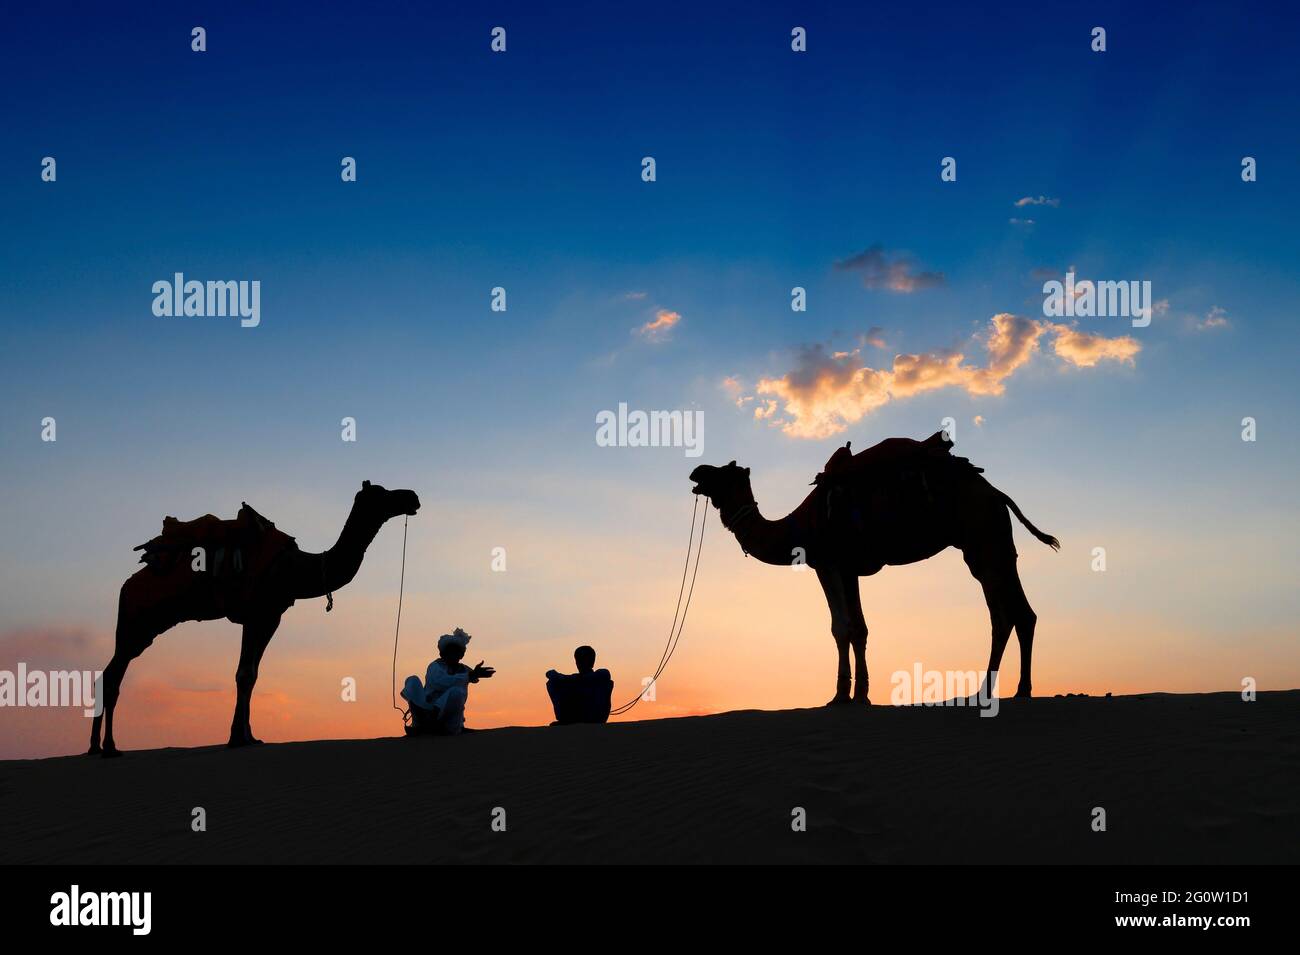 Silhouette de deux caméléers et de leurs chameaux sur les dunes de sable du désert de Thar, Rajasthan, Inde. Coucher de soleil avec ciel bleu en arrière-plan. Caméléers assis. Banque D'Images